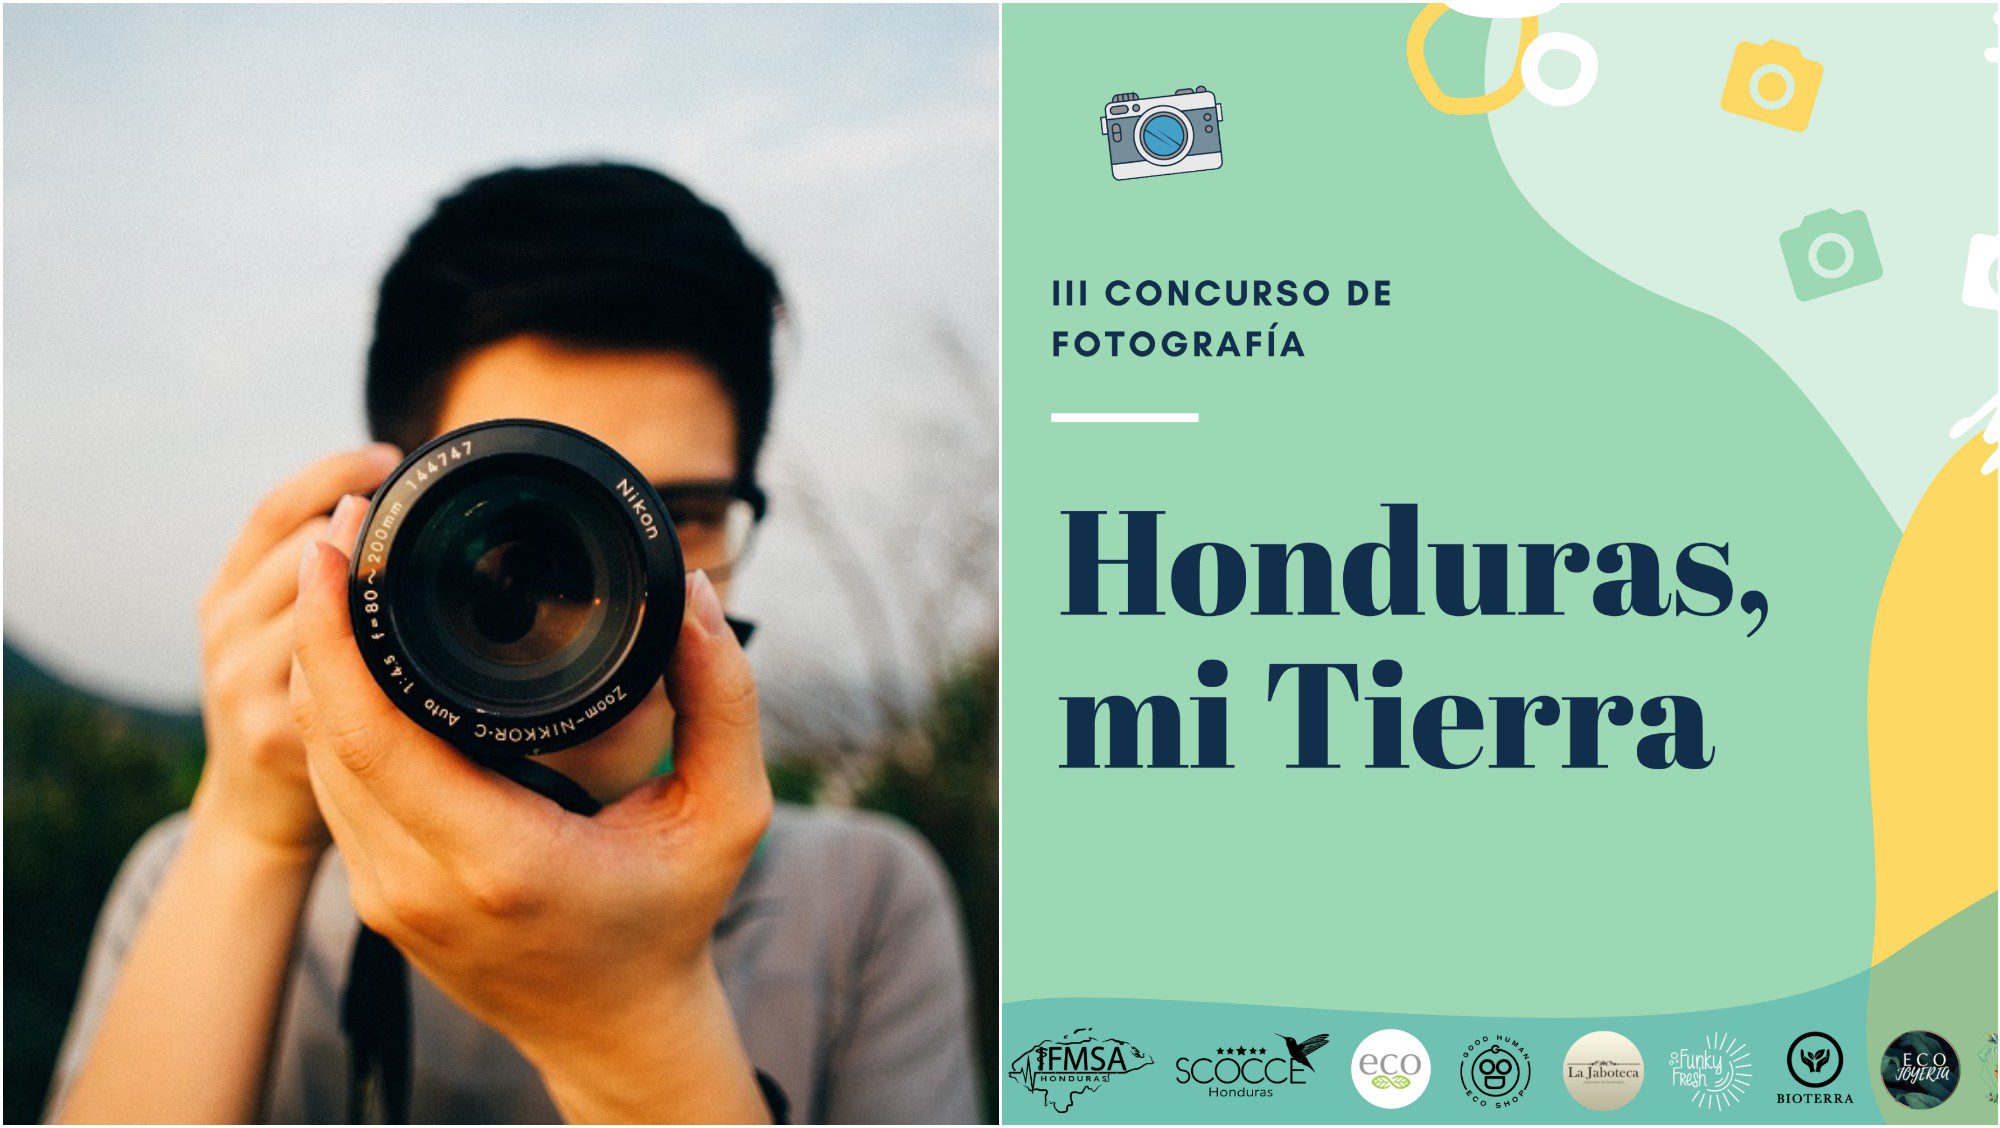 IFMSA-Honduras lanza concurso de fotografía del medio ambiente